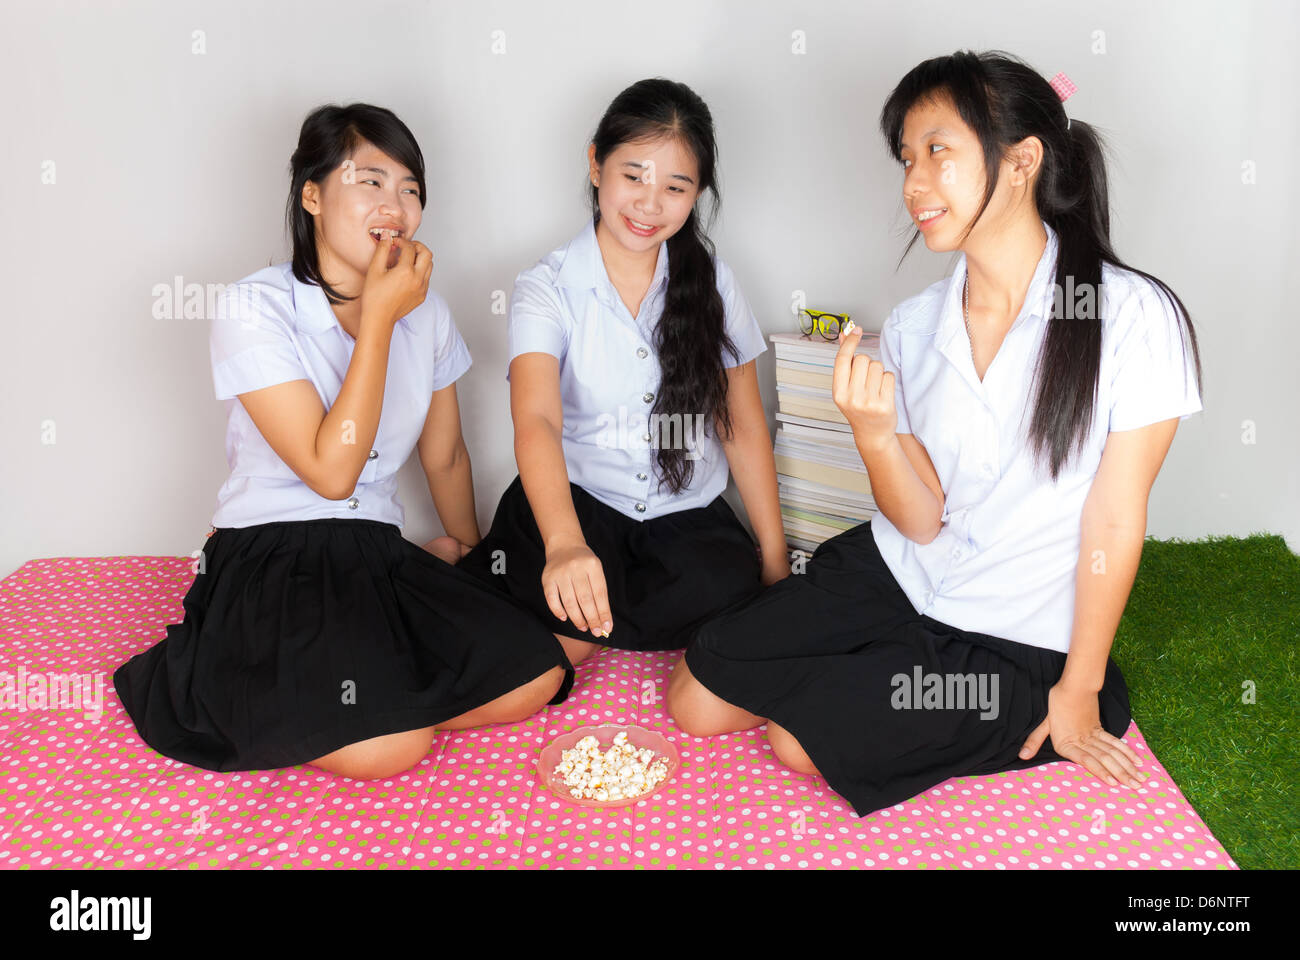 Les étudiants asiatiques Thai eating popcorn dans le groupe Banque D'Images